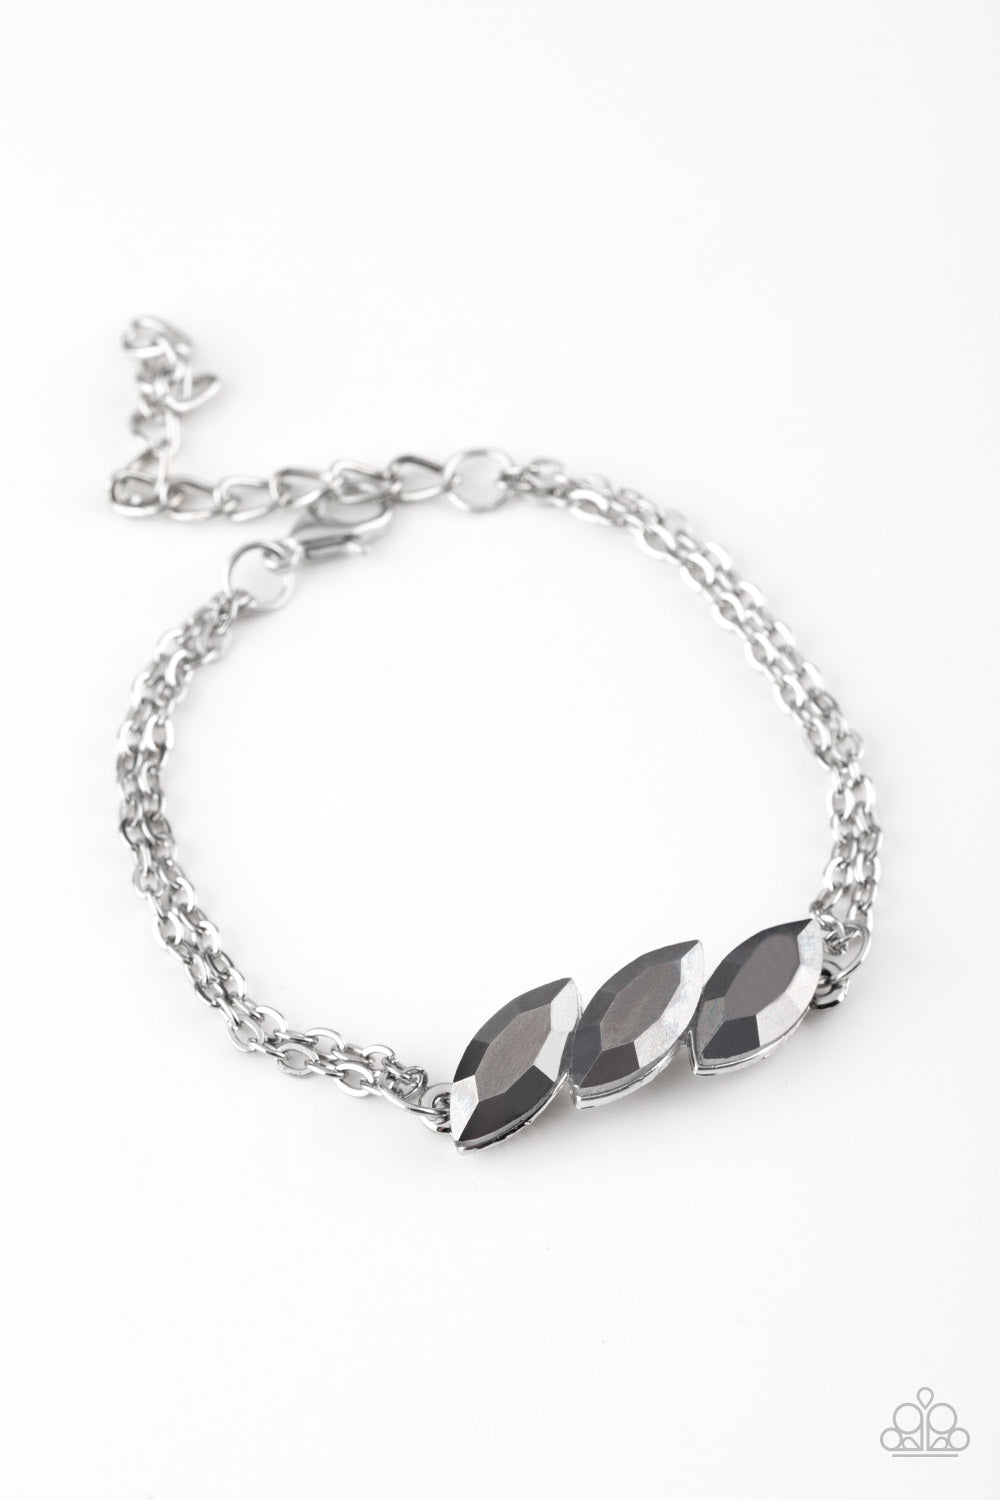 five-dollar-jewelry-pretty-priceless-silver-bracelet-paparazzi-accessories